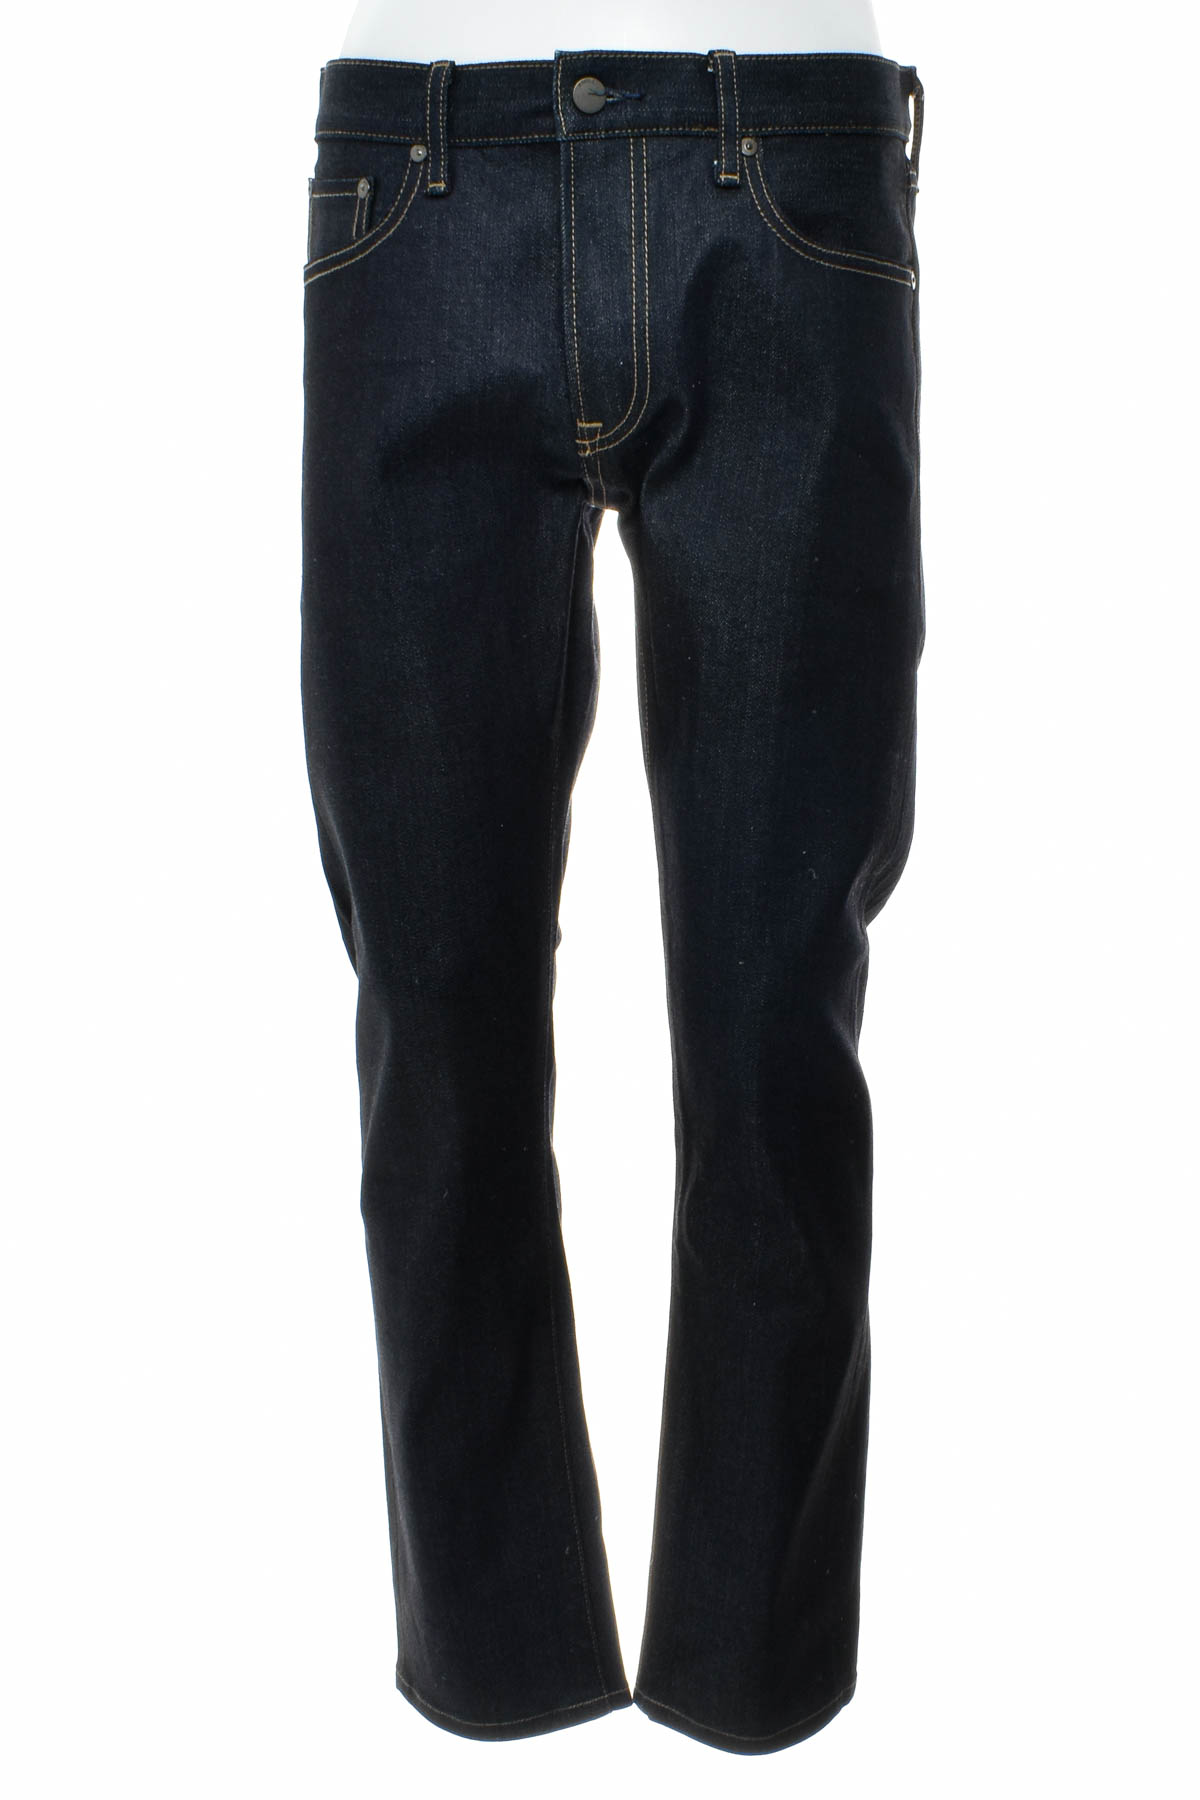 Men's jeans - UNIQLO JEANS - 0